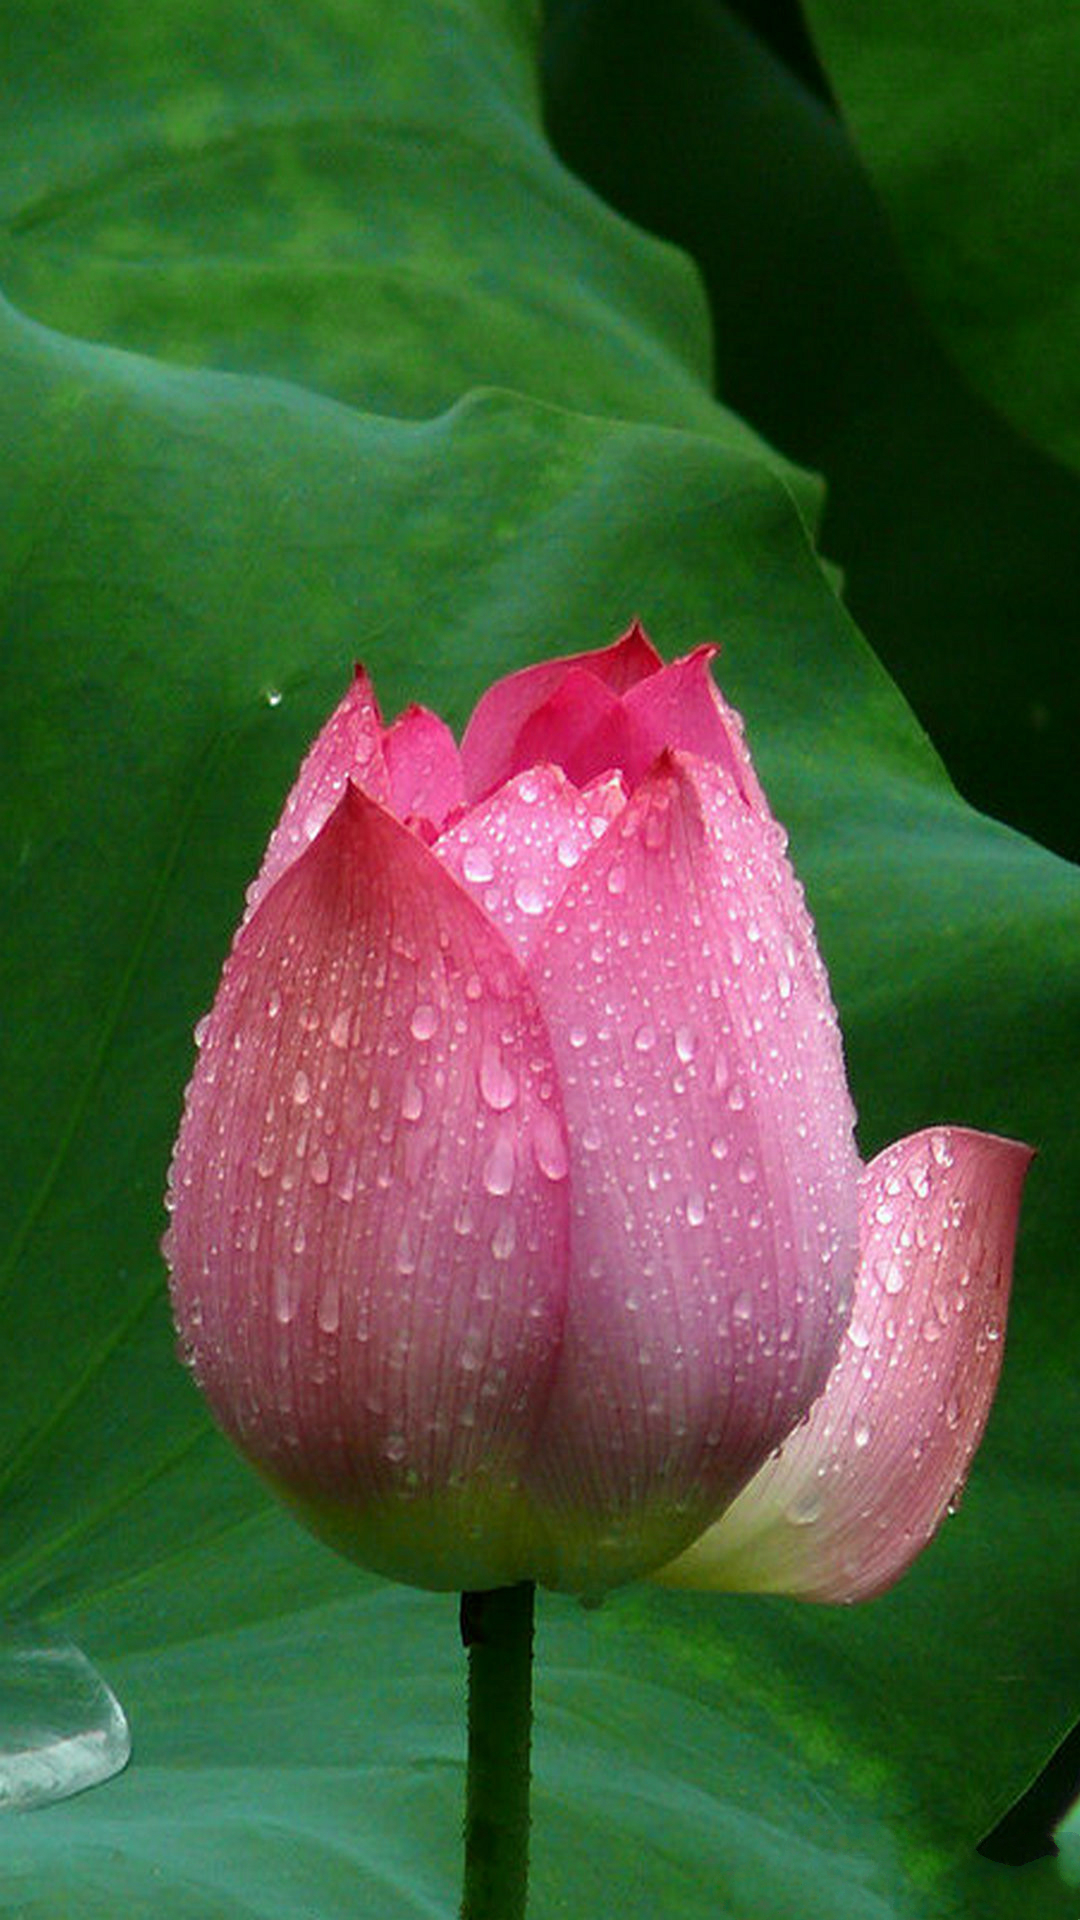 [49+] Lotus Flower iPhone Wallpaper | WallpaperSafari.com